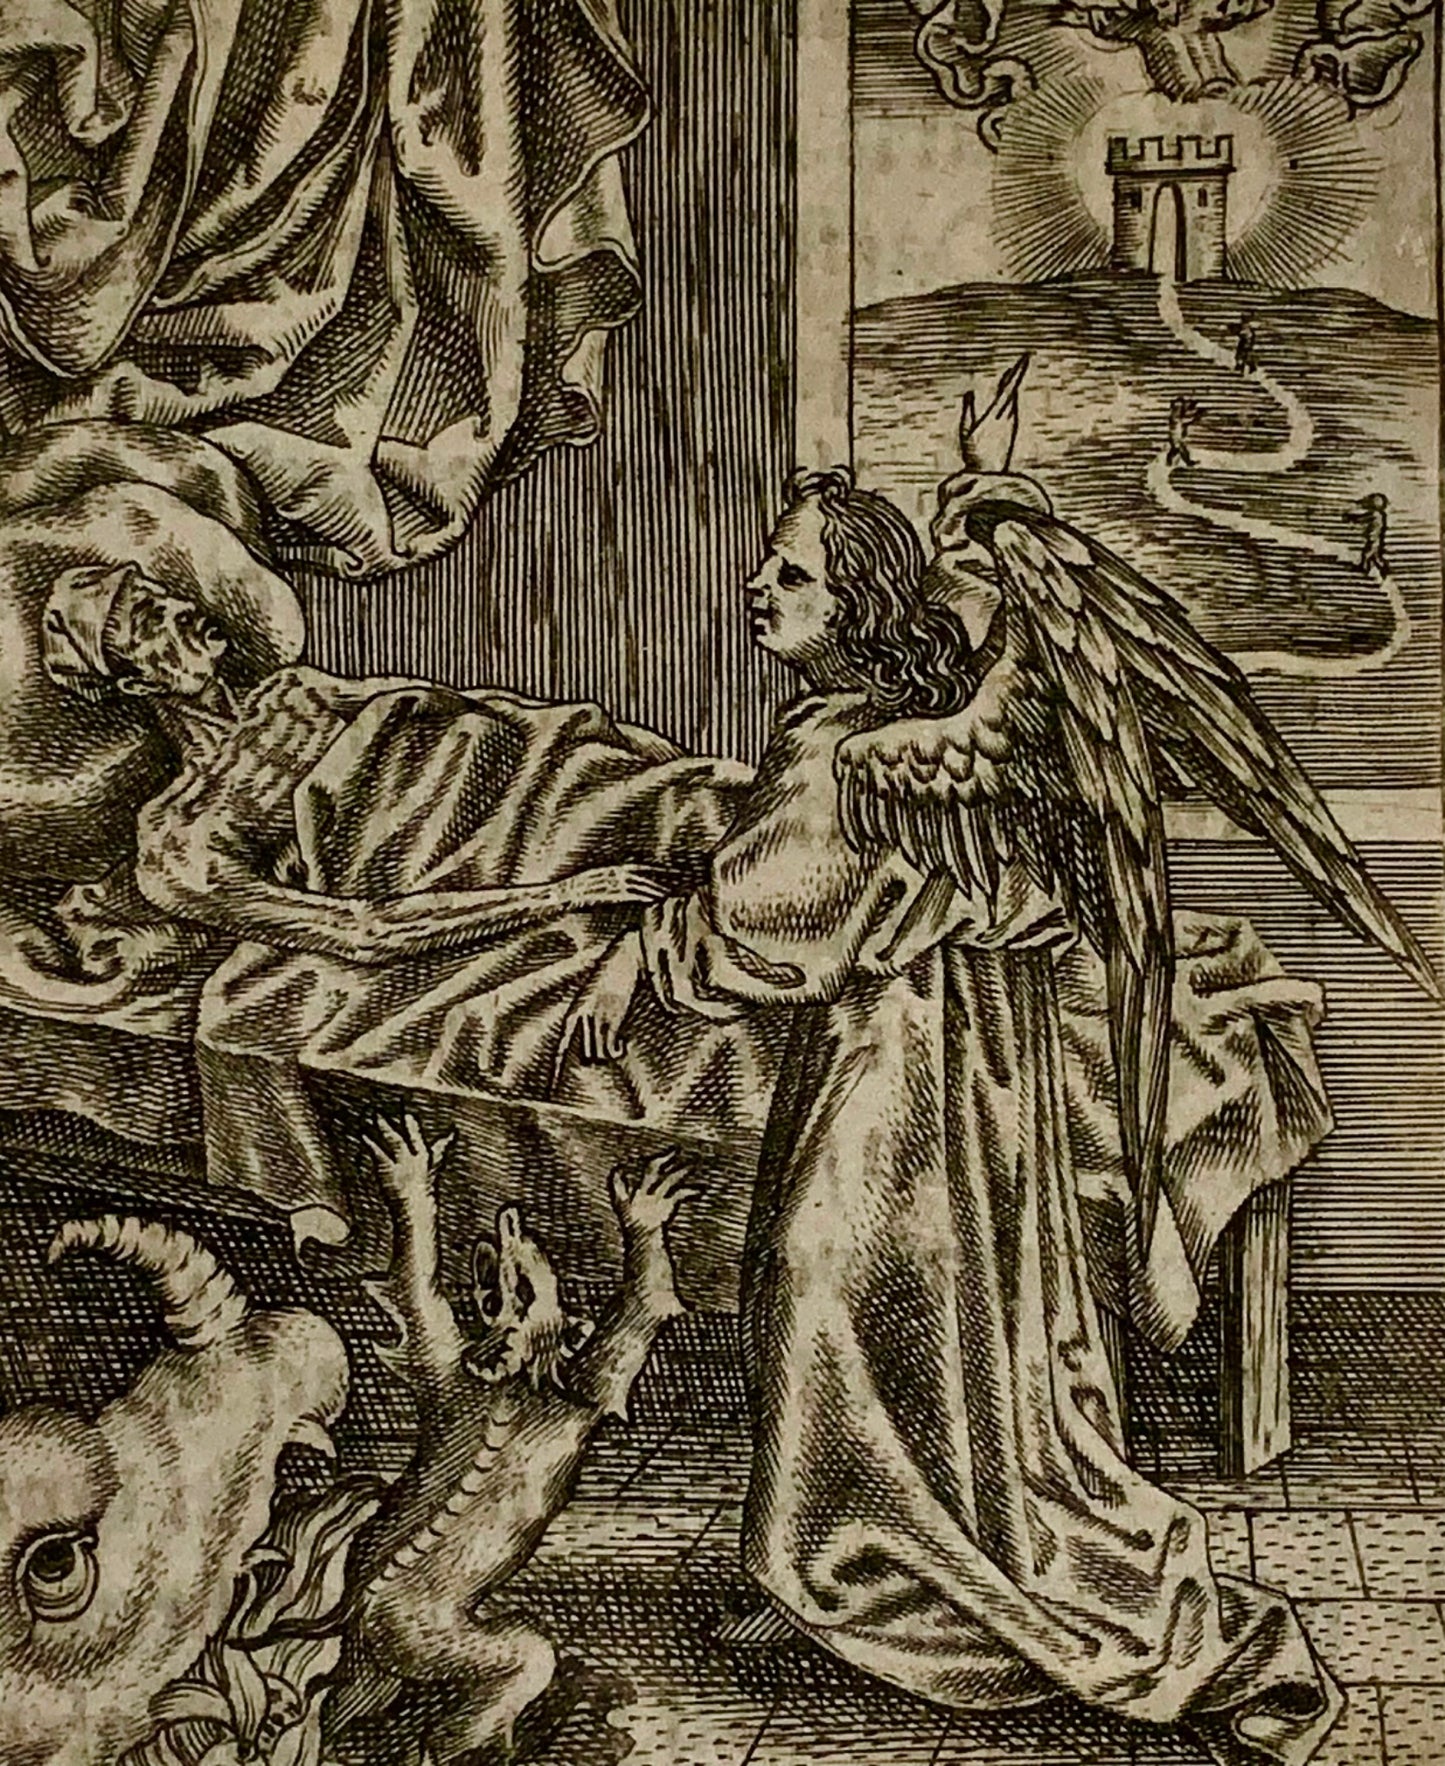 1623 Maître MZ. Ars Moriendi. Ange réprimandant la cupidité, lit de mort, gravure